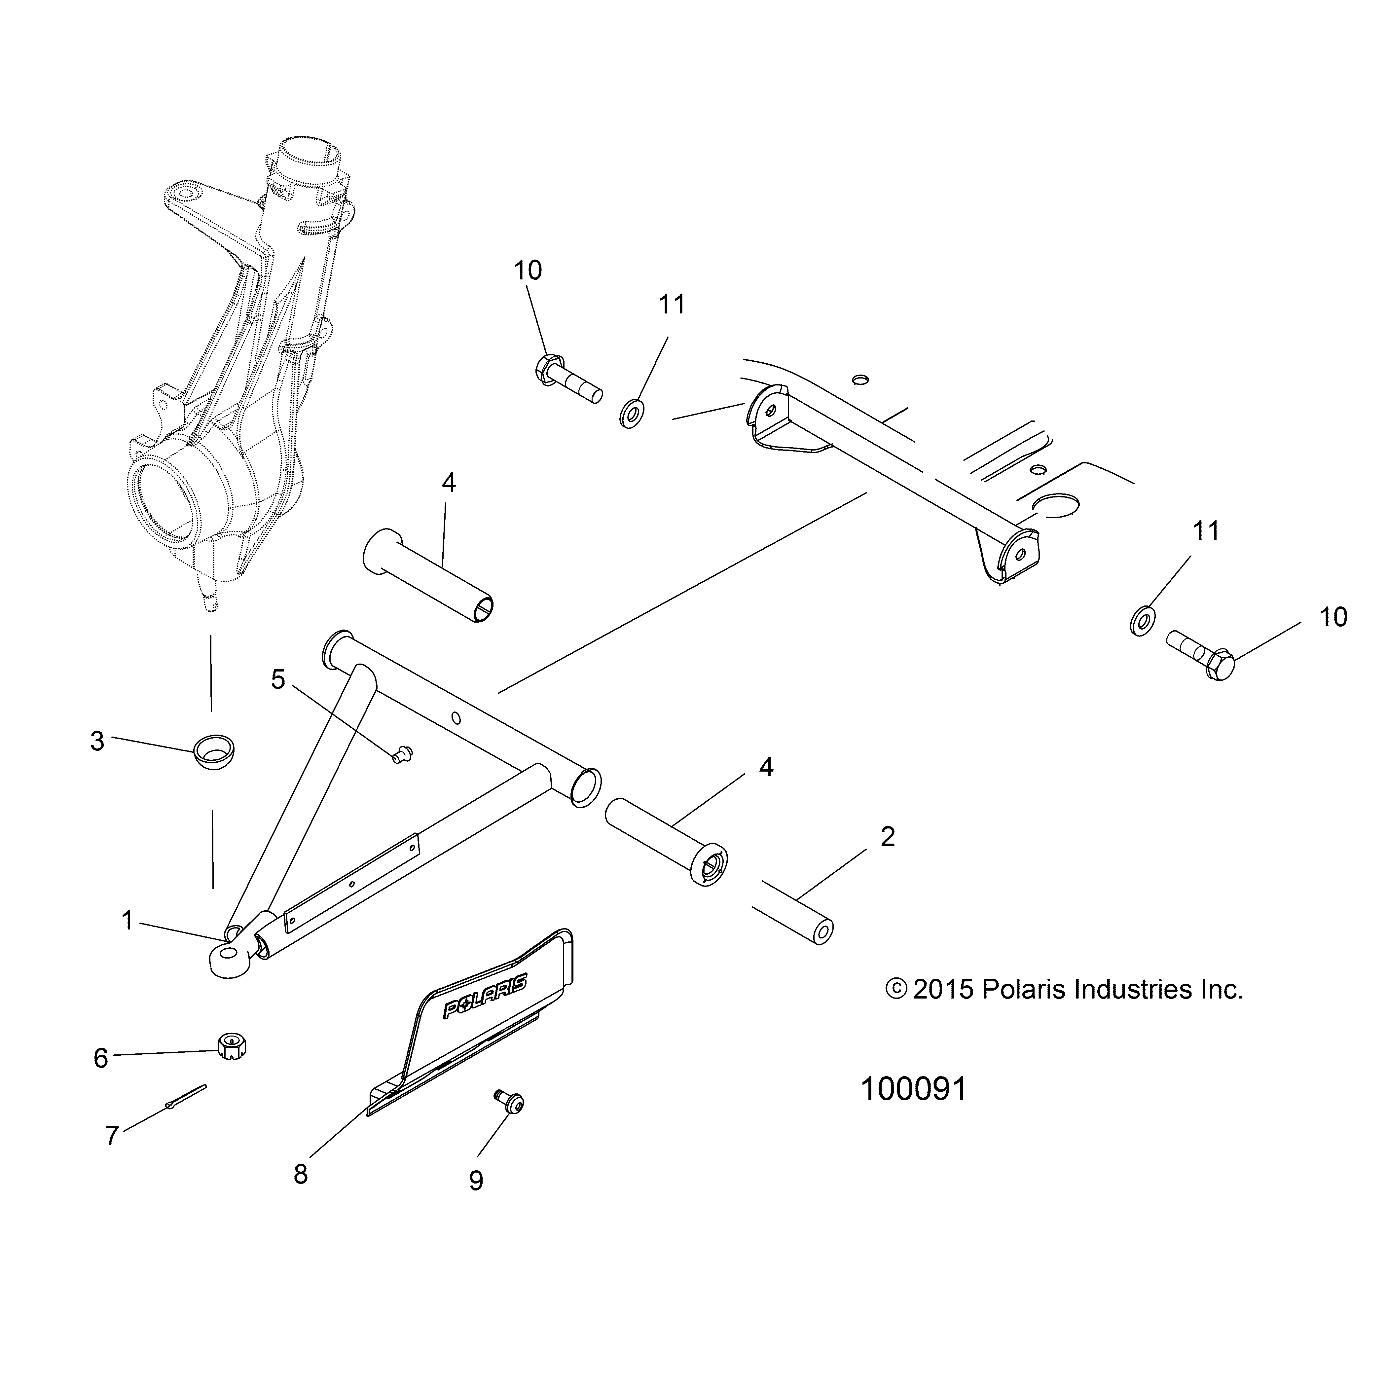 Foto diagrama Polaris que contem a peça 7520340